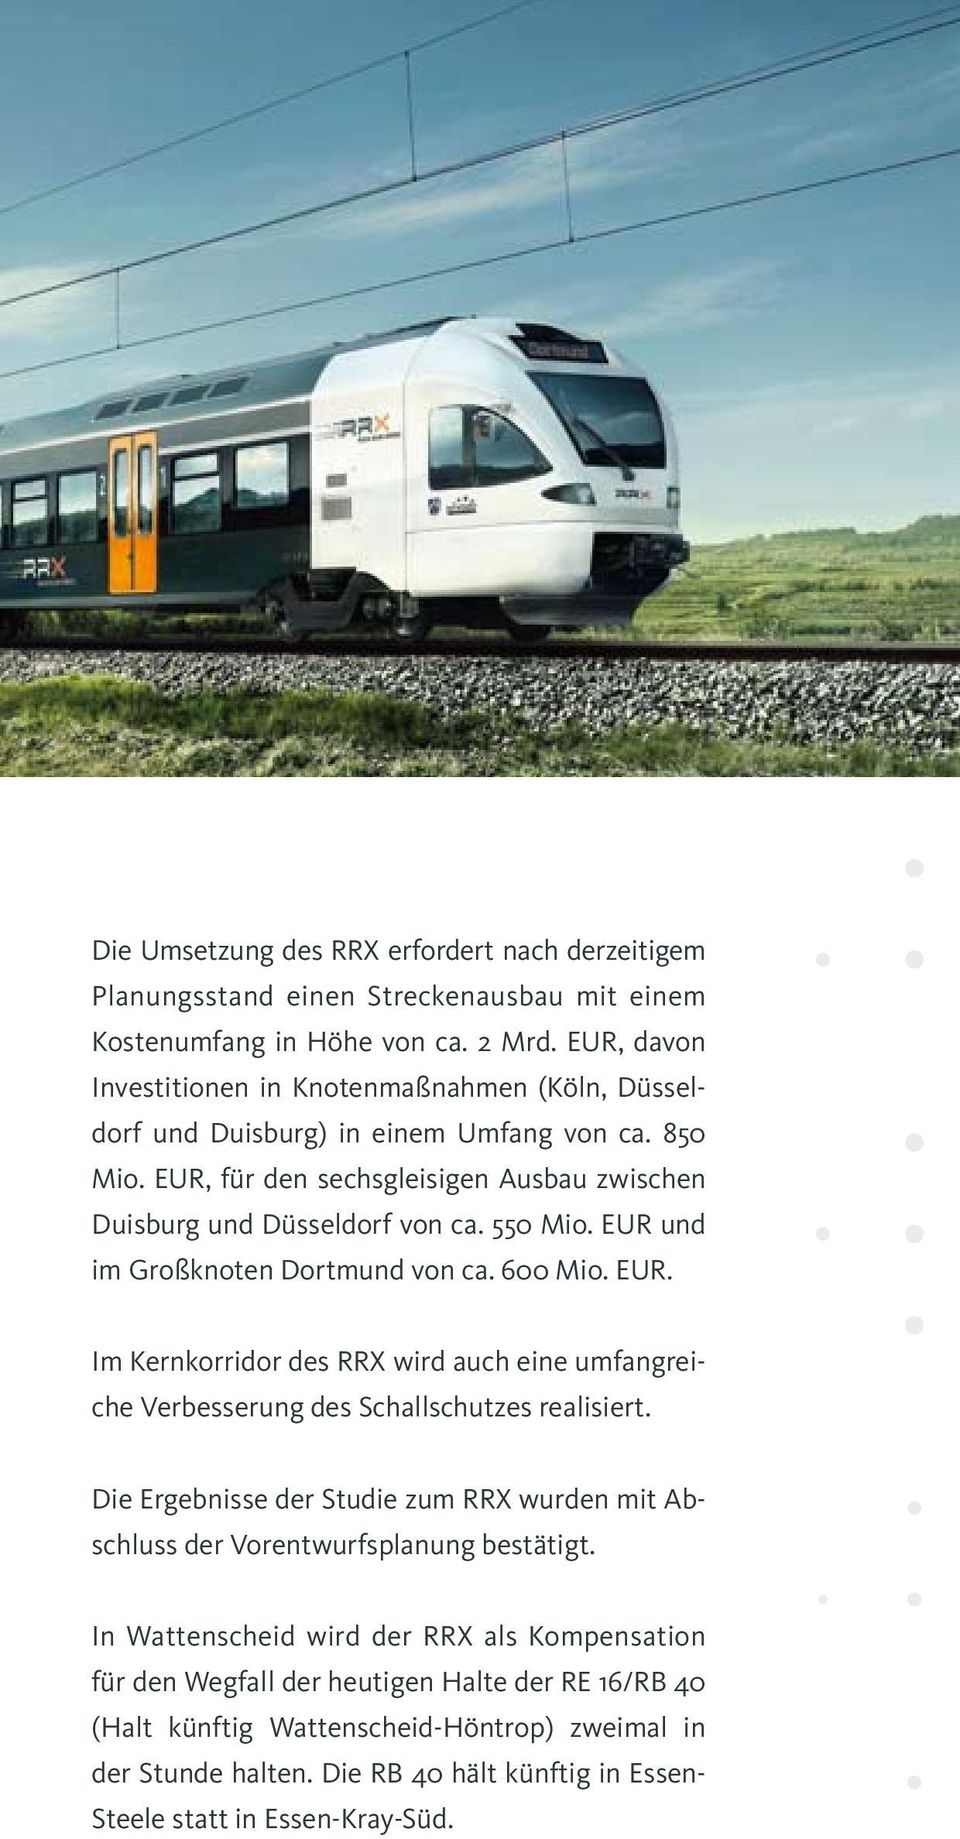 EUR und im Großknoten Dortmund von ca. 600 Mio. EUR. Im Kernkorridor des RRX wird auch eine umfangreiche Verbesserung des Schallschutzes realisiert.